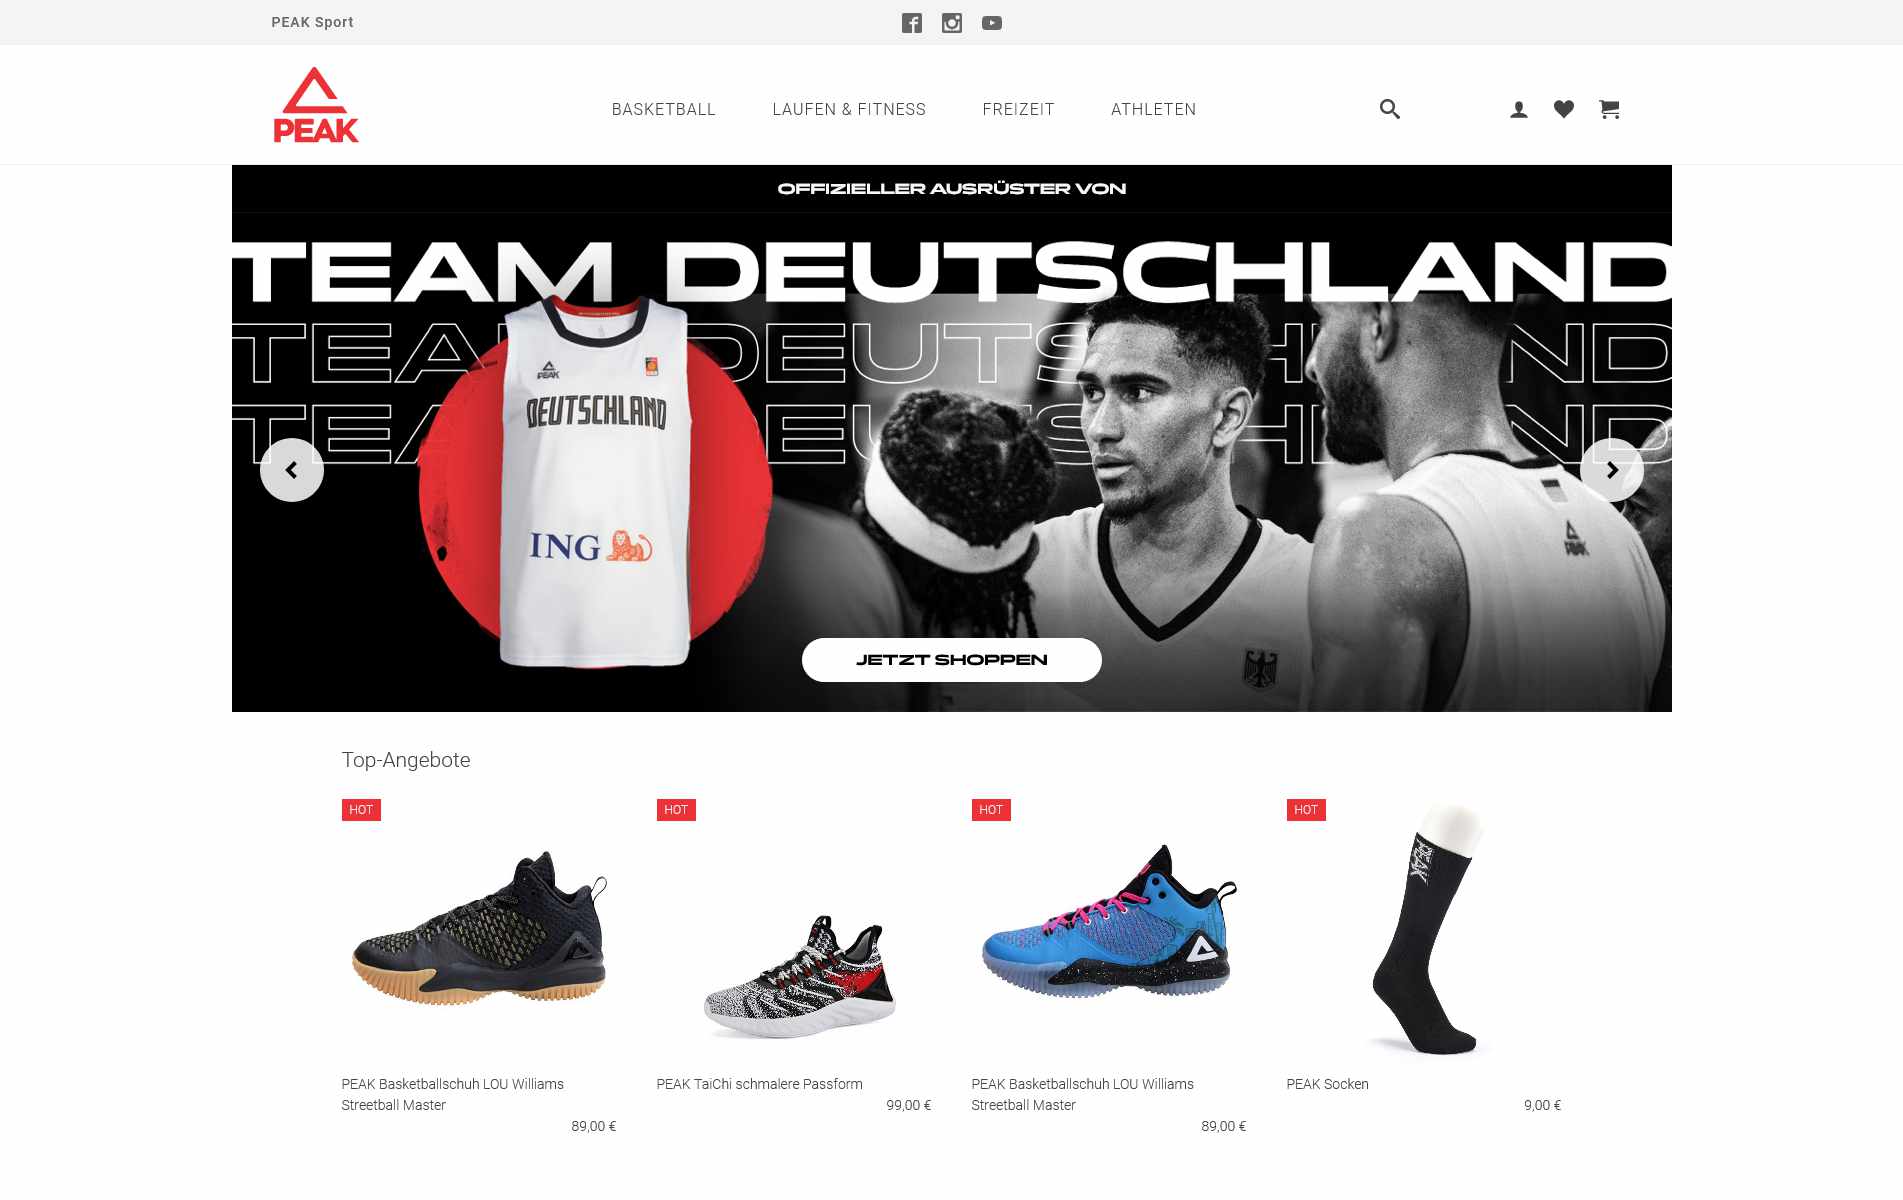 Bild: myfactory-Shop- und Website-Template für Peak Sport - 2021